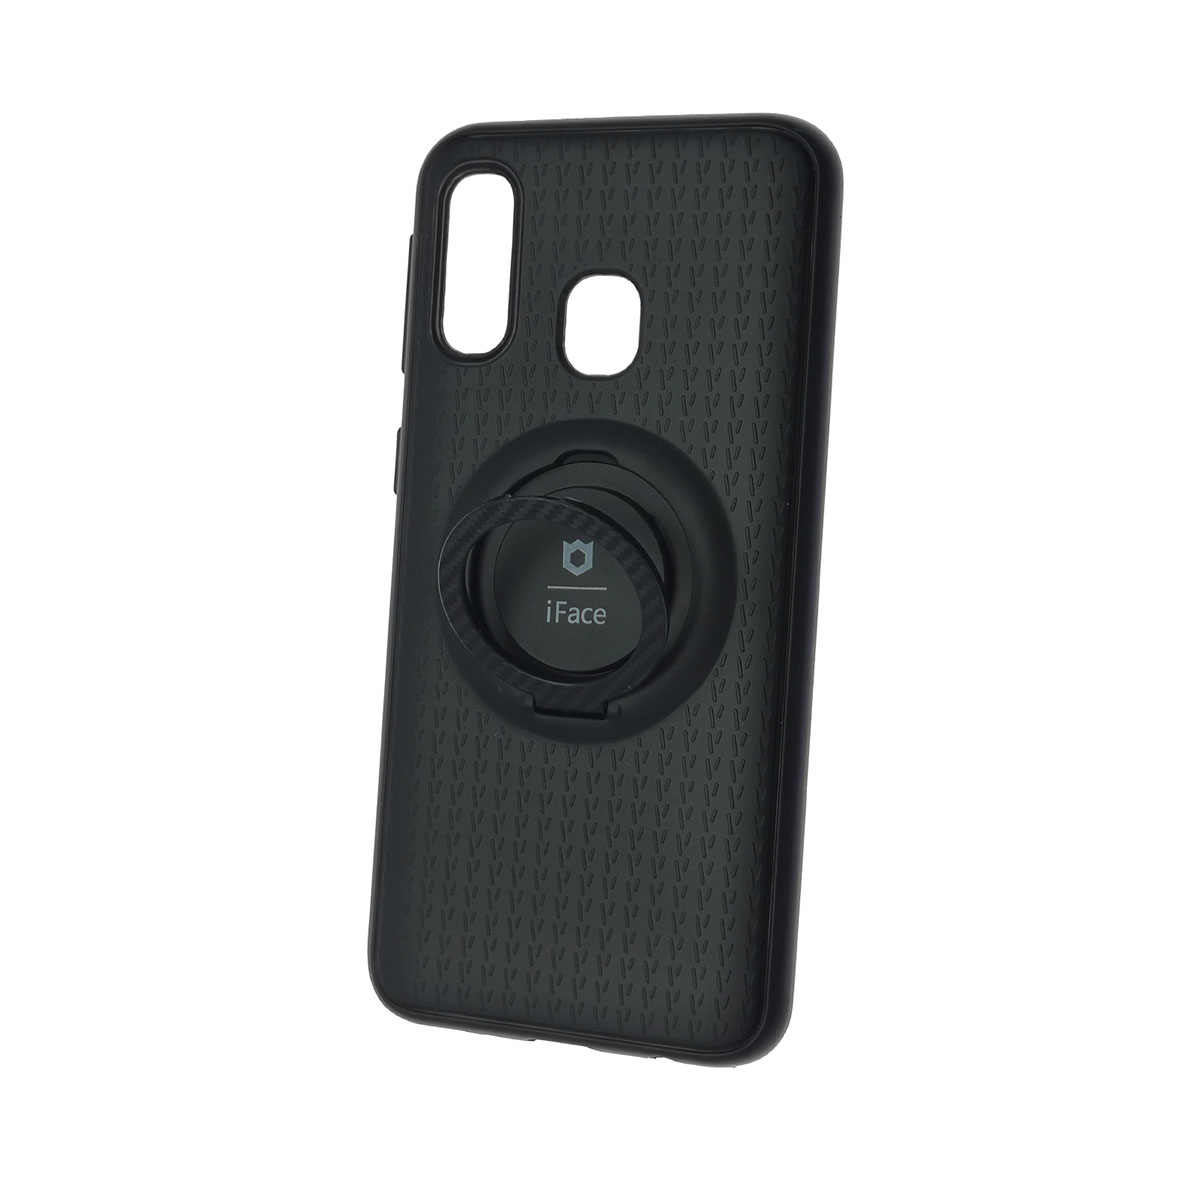 Чехол накладка iFace для SAMSUNG Galaxy A40 2019 (SM-A405), силикон, металл, кольцо держатель, цвет черный.